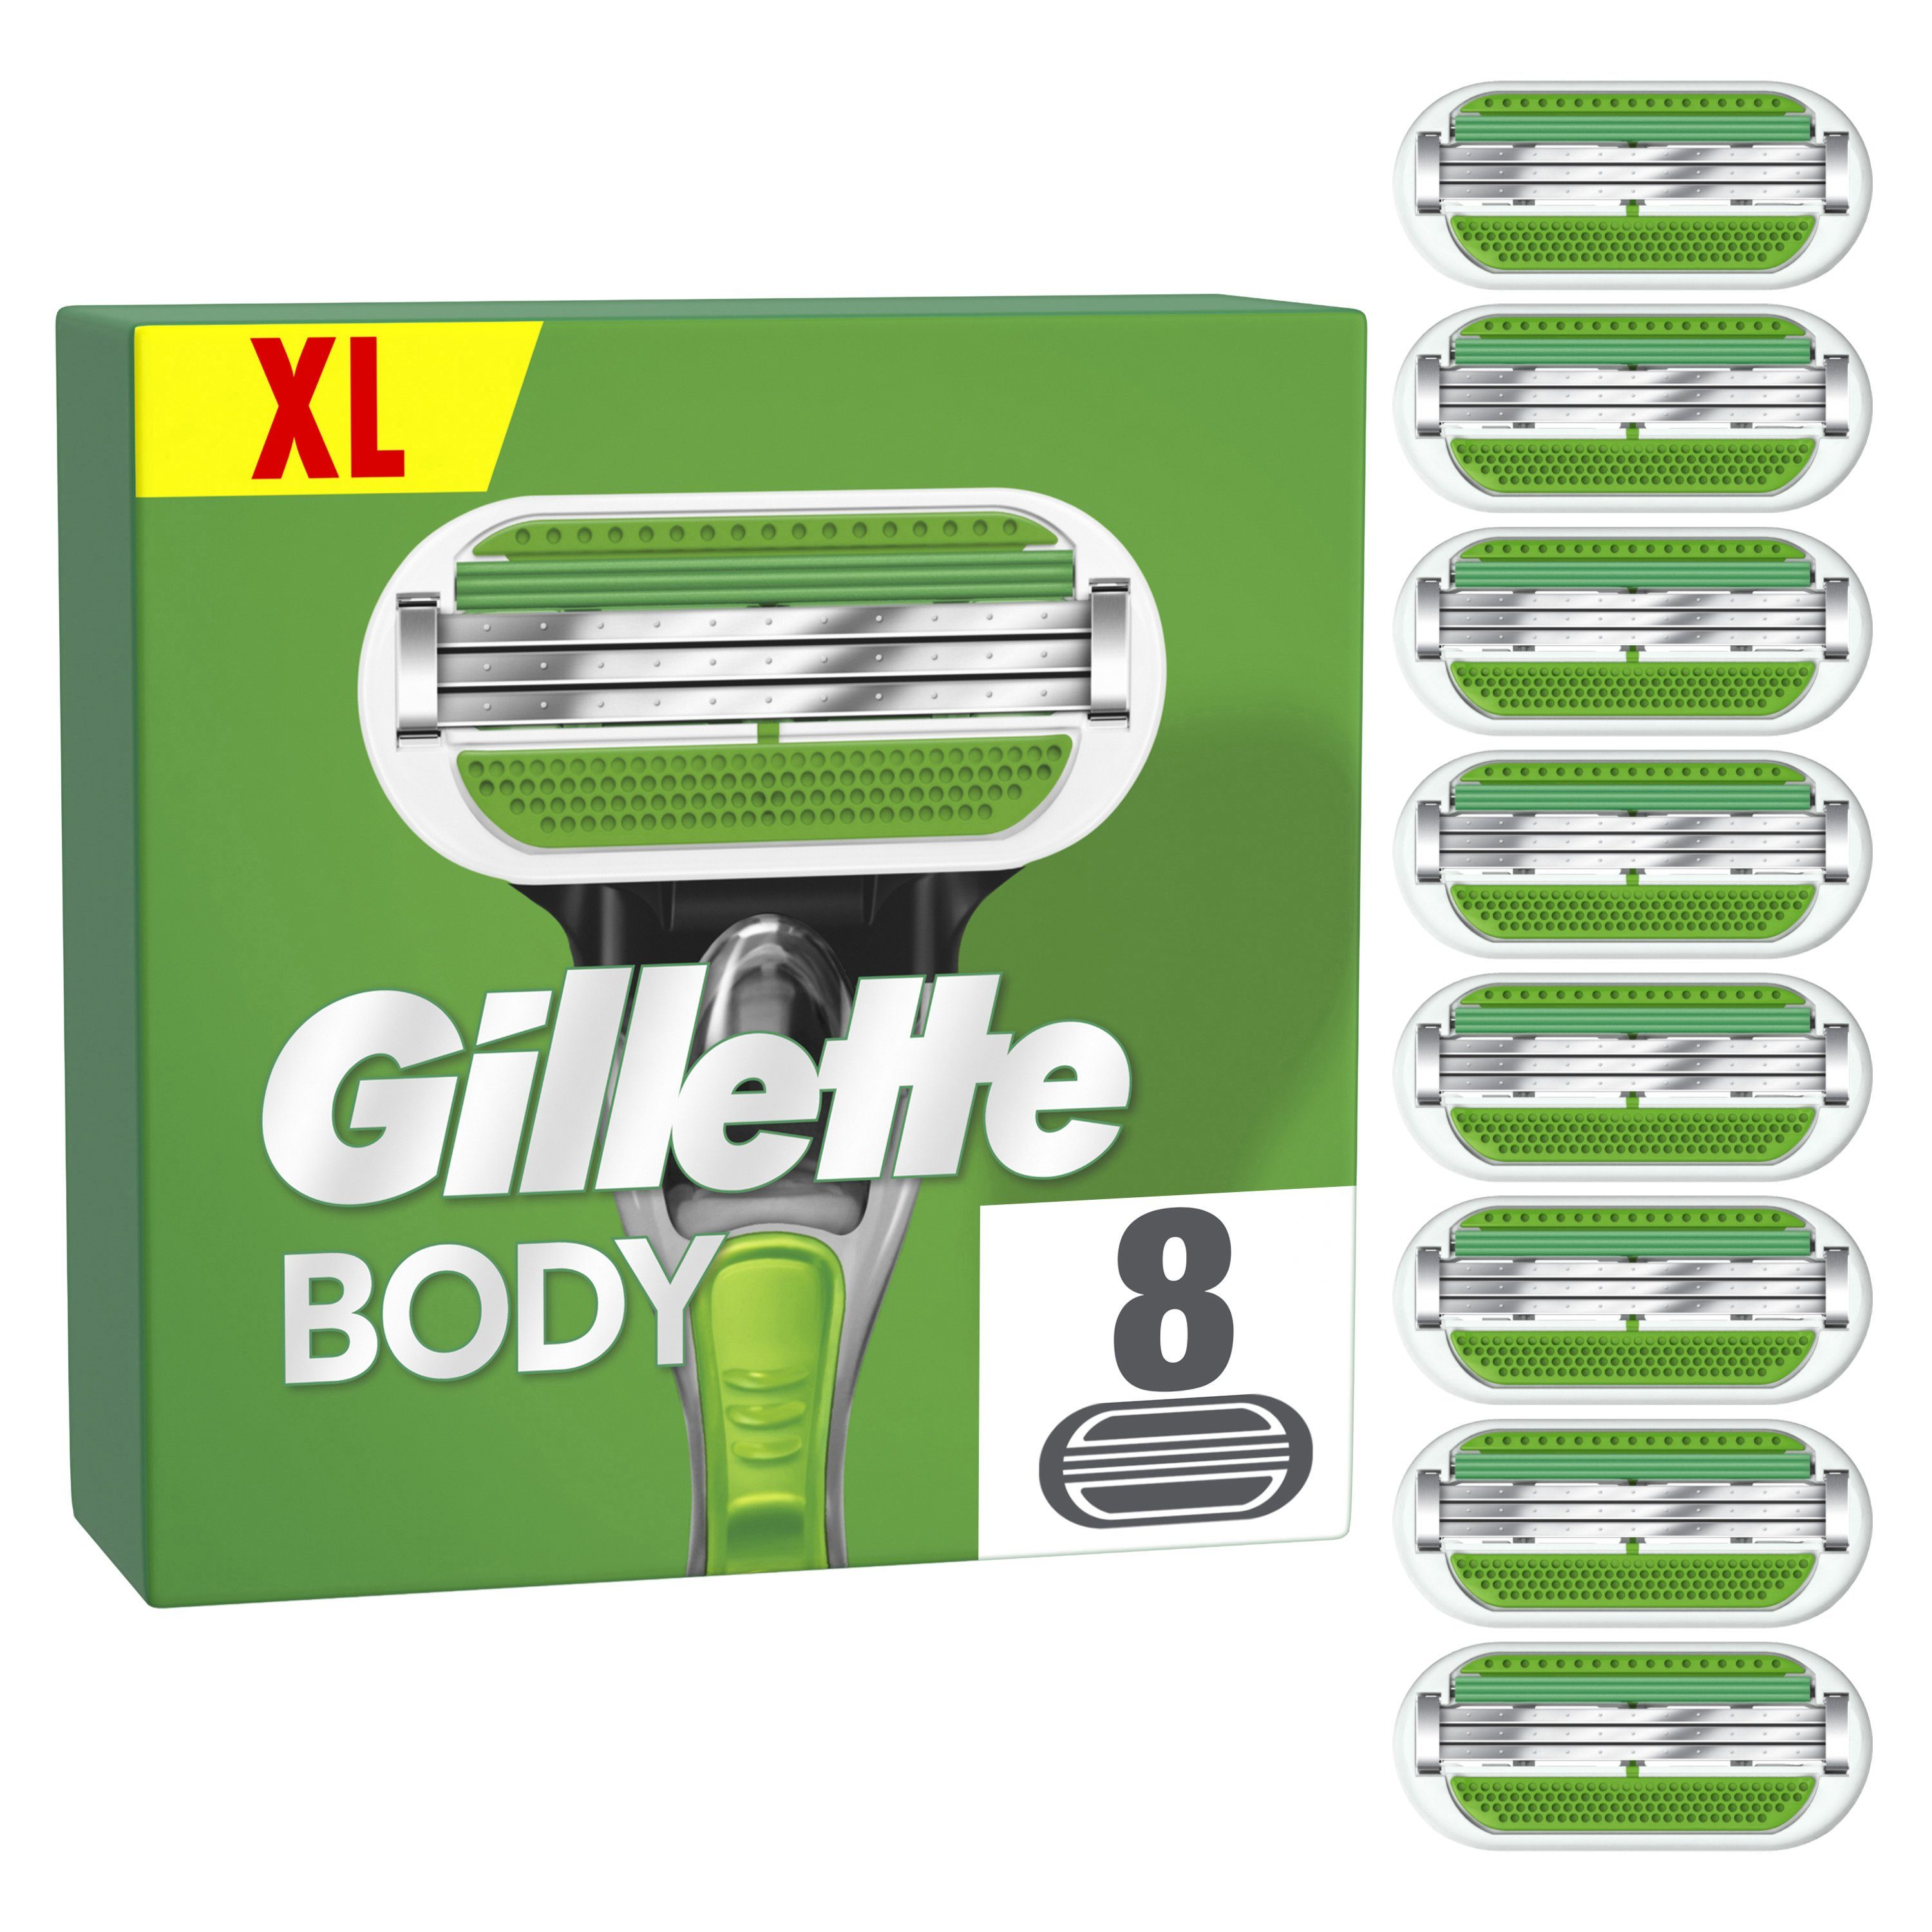 Gillette Rasierklingen Body - 8St., Entwickelt für die männliche Körperrasur  online kaufen | OTTO